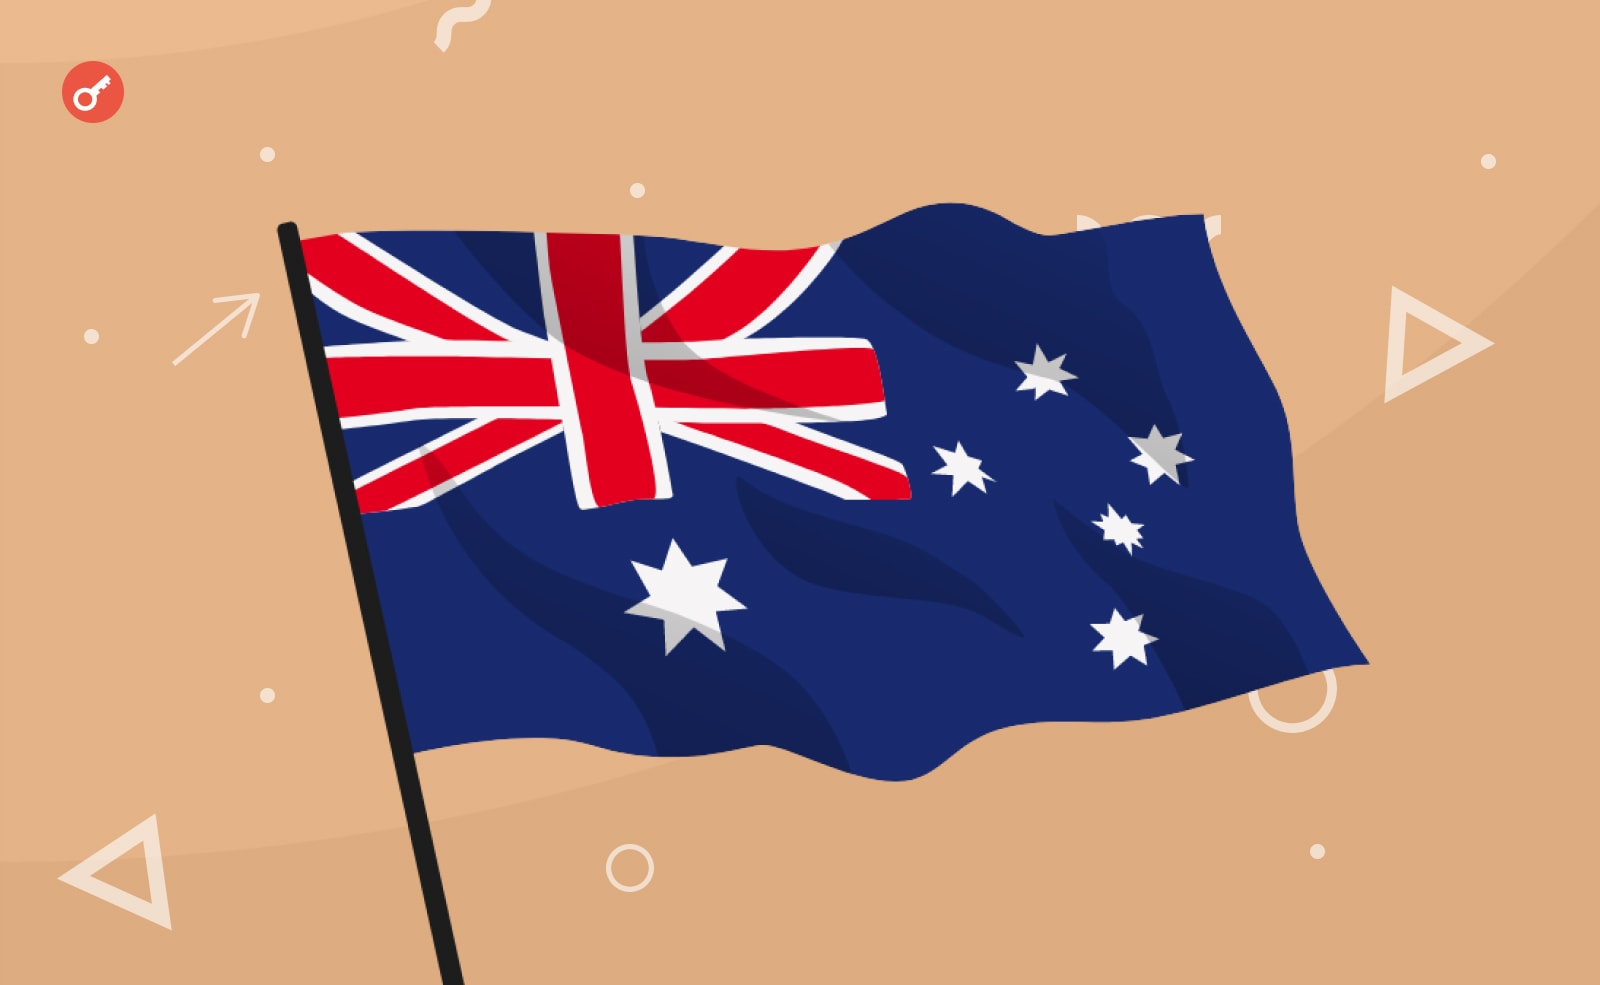 Австралия отложила рассмотрение закона о криптовалютах на 2024 год. Заглавный коллаж новости.